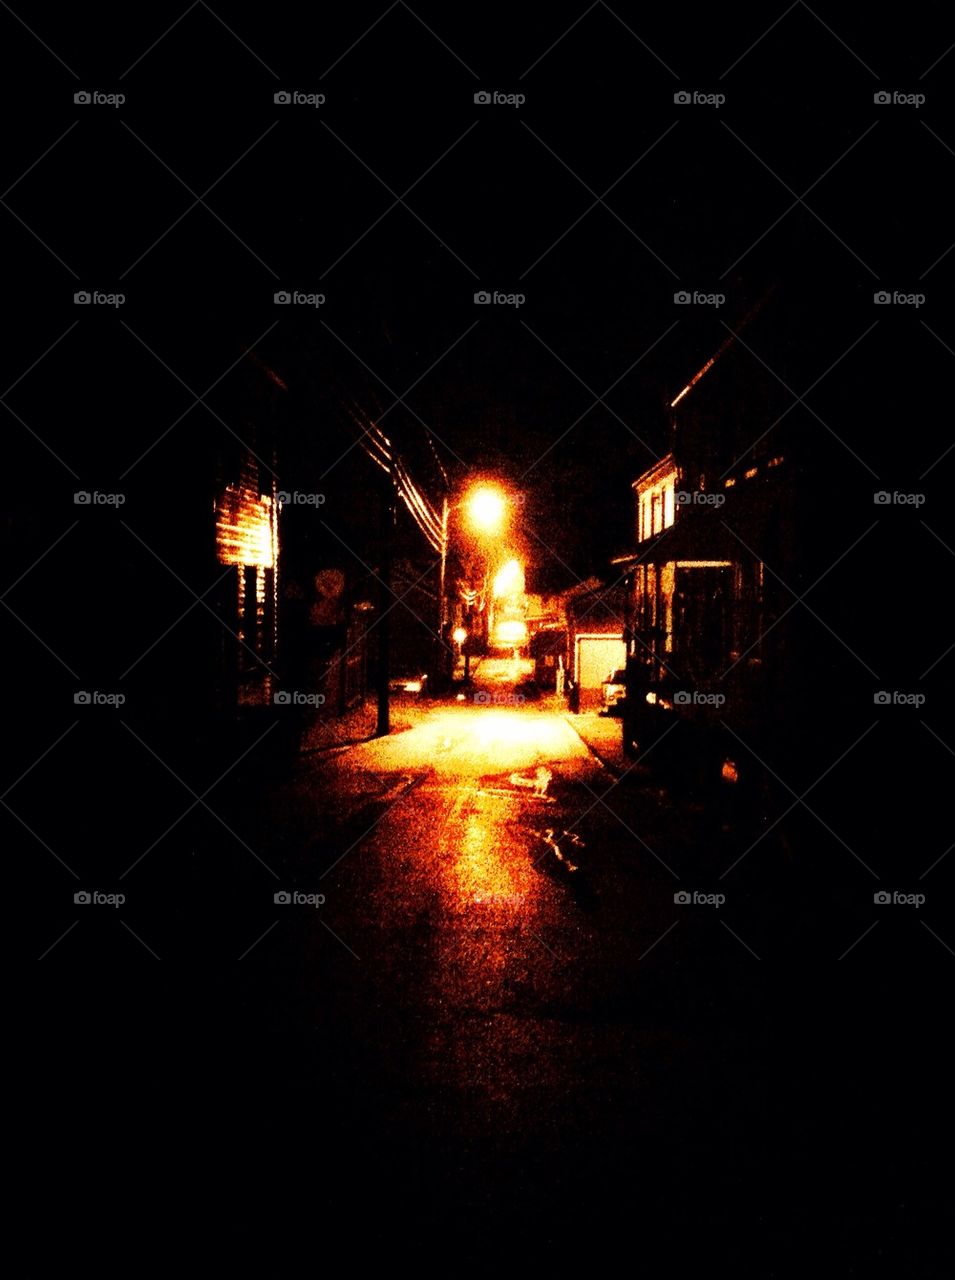 Night time/dark alley